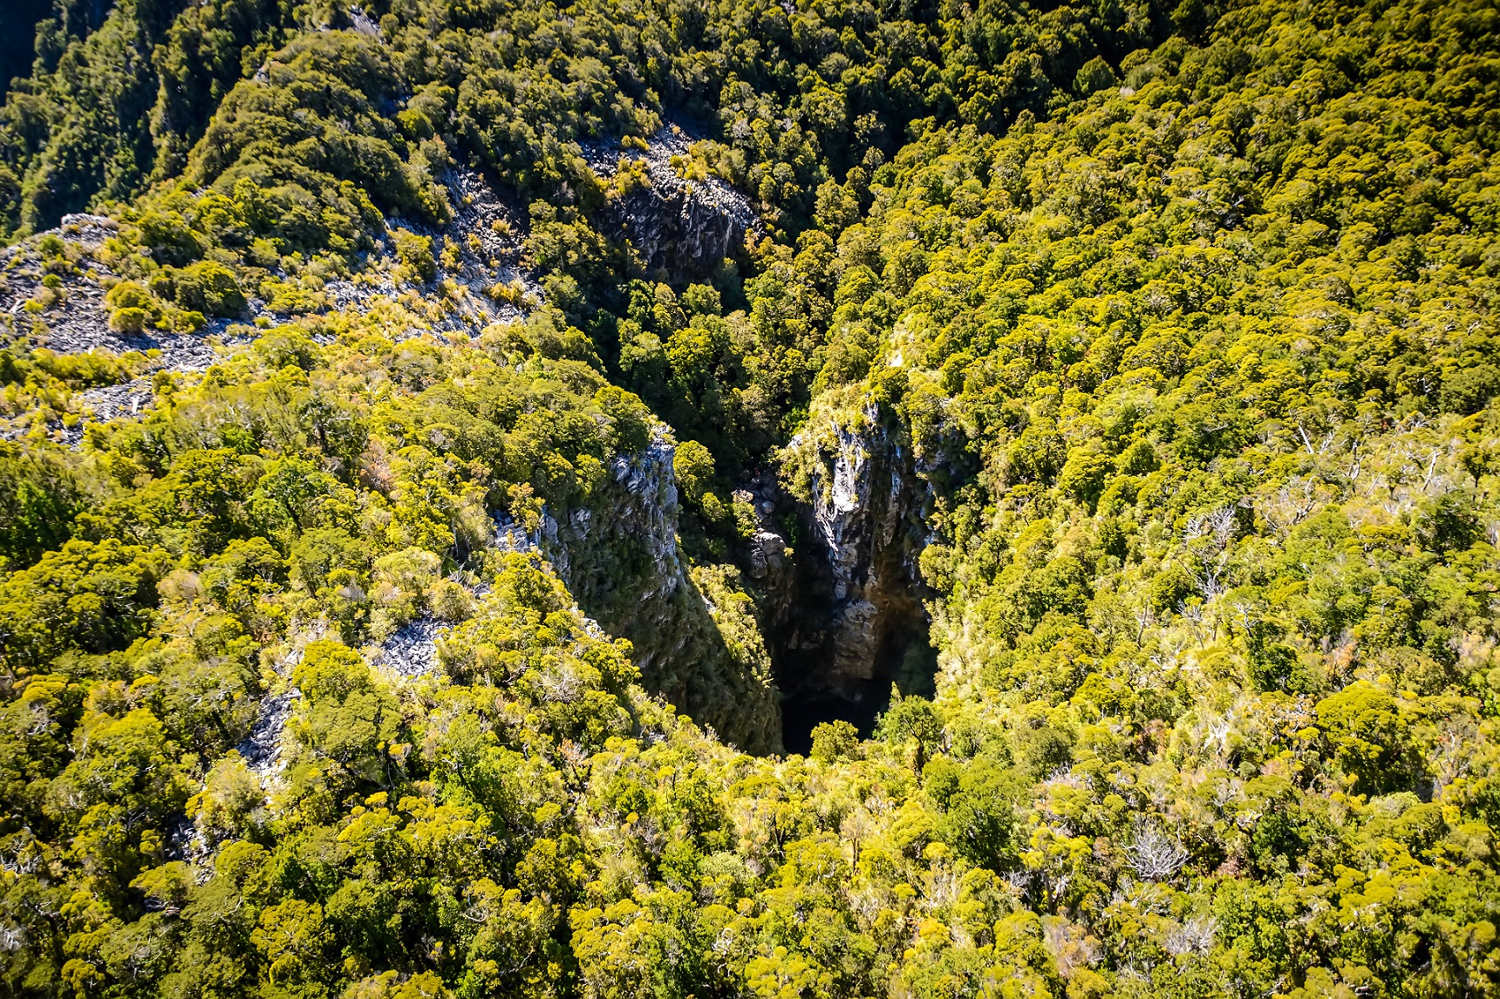 Harwoods hole, Nelson, New Zealand @NelsonTasman